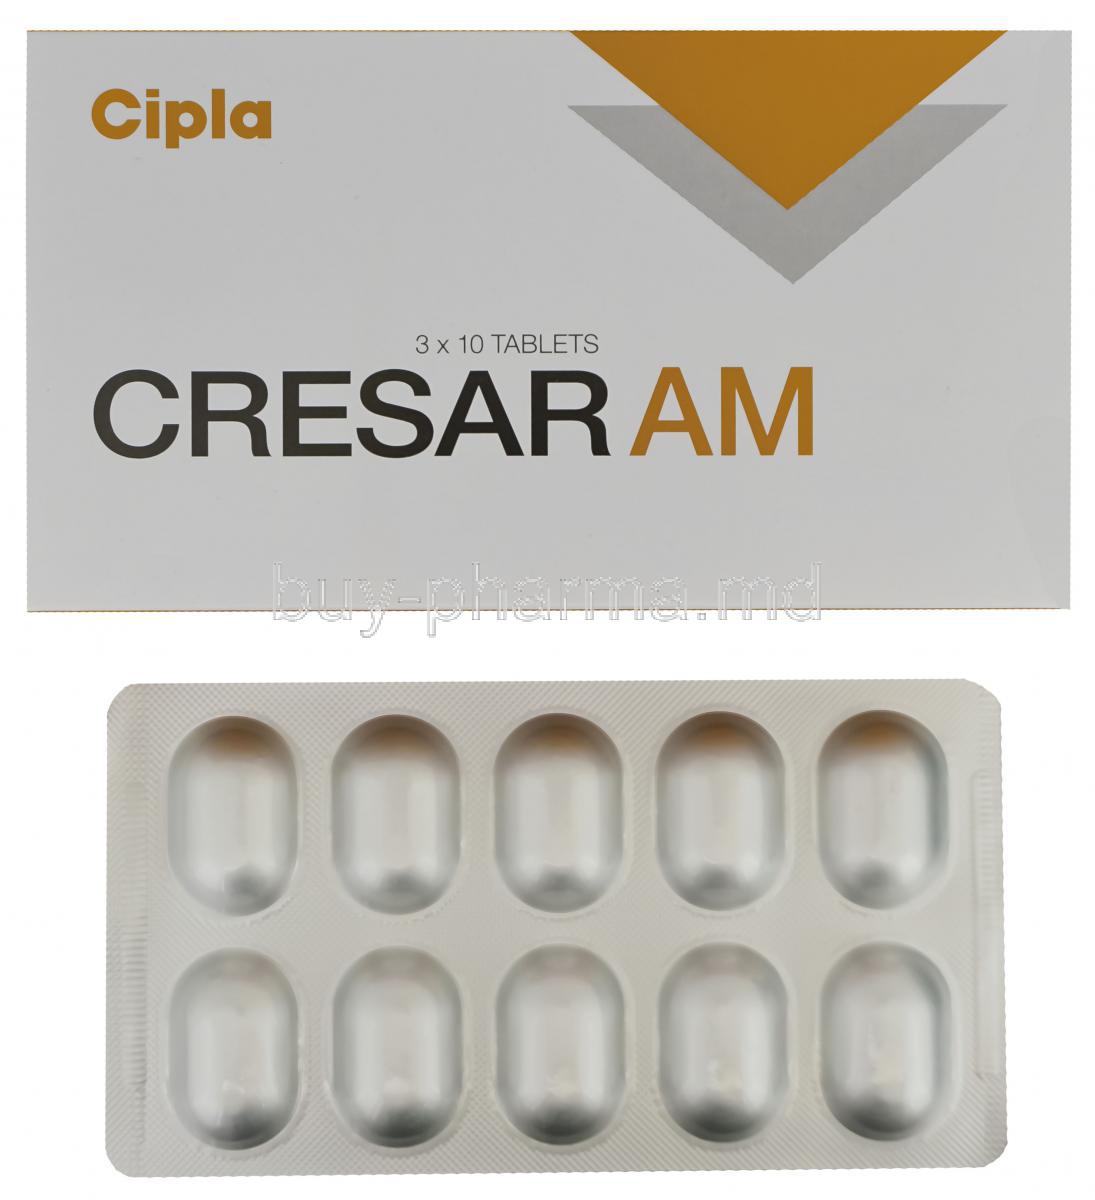 Cresar AM, Amlodipine 5mg and Telmisartan 40mg